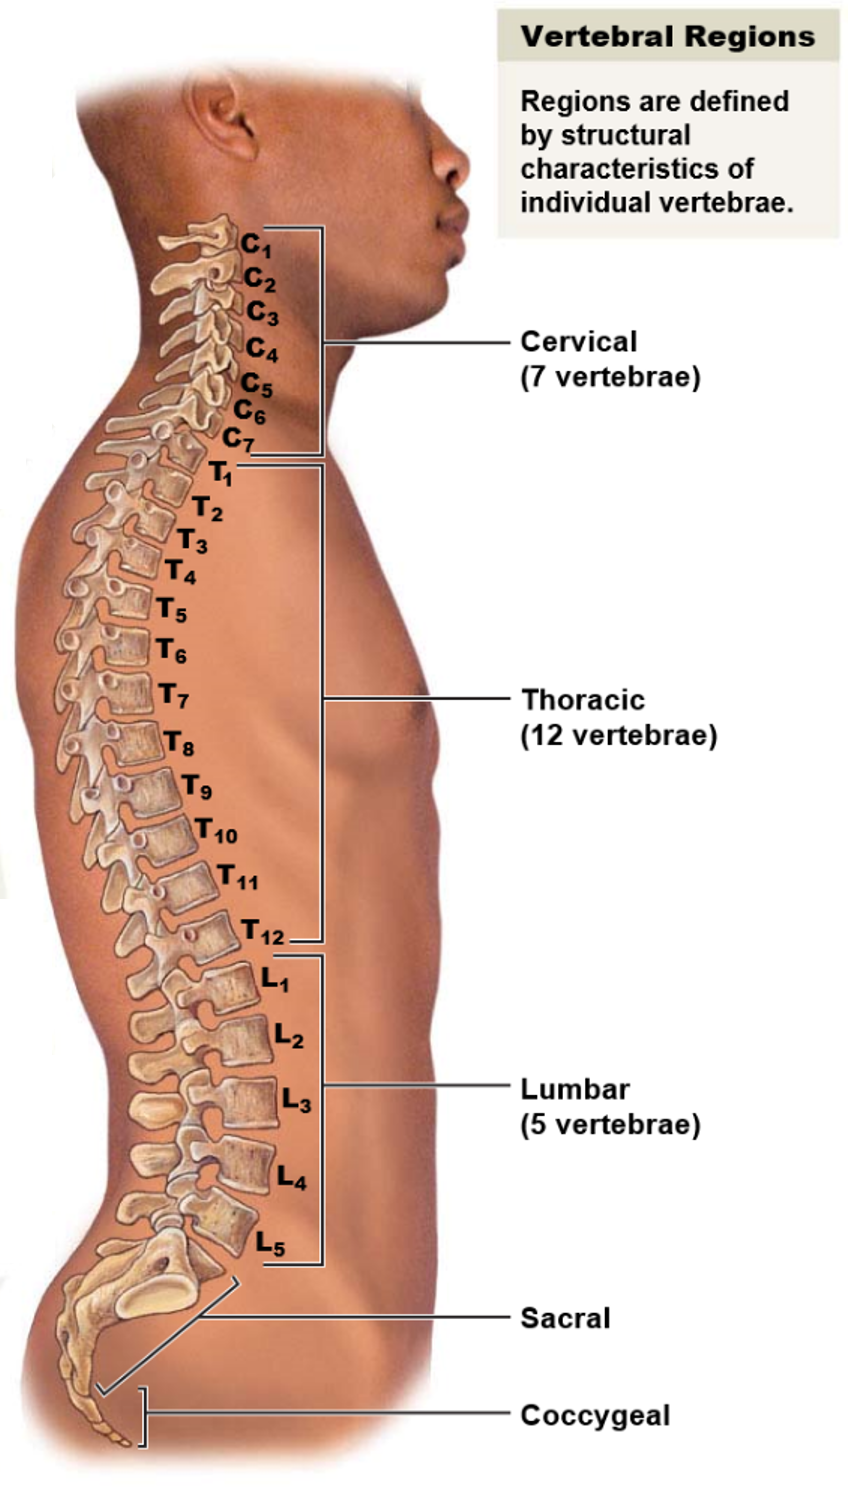 <p>The five vertebral regions and the number of bones in each region are:</p><ul><li><p>Cervical region: 7 vertebrae</p></li><li><p>Thoracic region: 12 vertebrae</p></li><li><p>Lumbar region: 5 vertebrae</p></li><li><p>Sacrum: 1 bone</p></li><li><p>Coccyx: 1 bone</p></li></ul><p>In total, there are 26 bones in the vertebral column.</p>